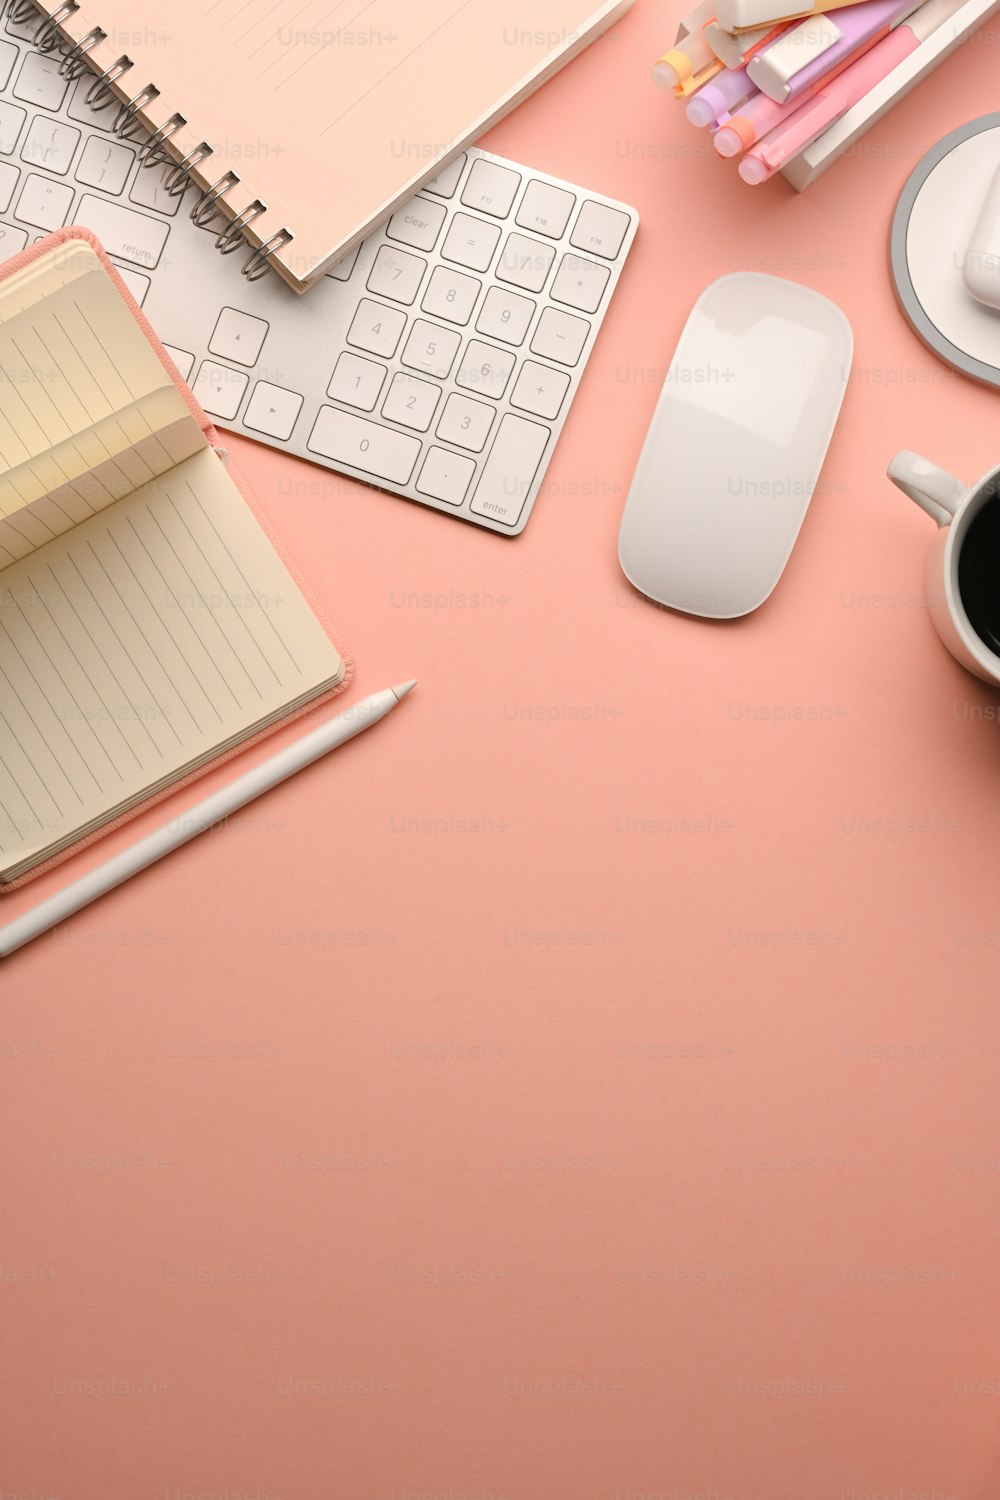 Foto recortada de la mesa de estudio creativa rosa con el teclado de la computadora, el ratón, la papelería y el espacio de copia